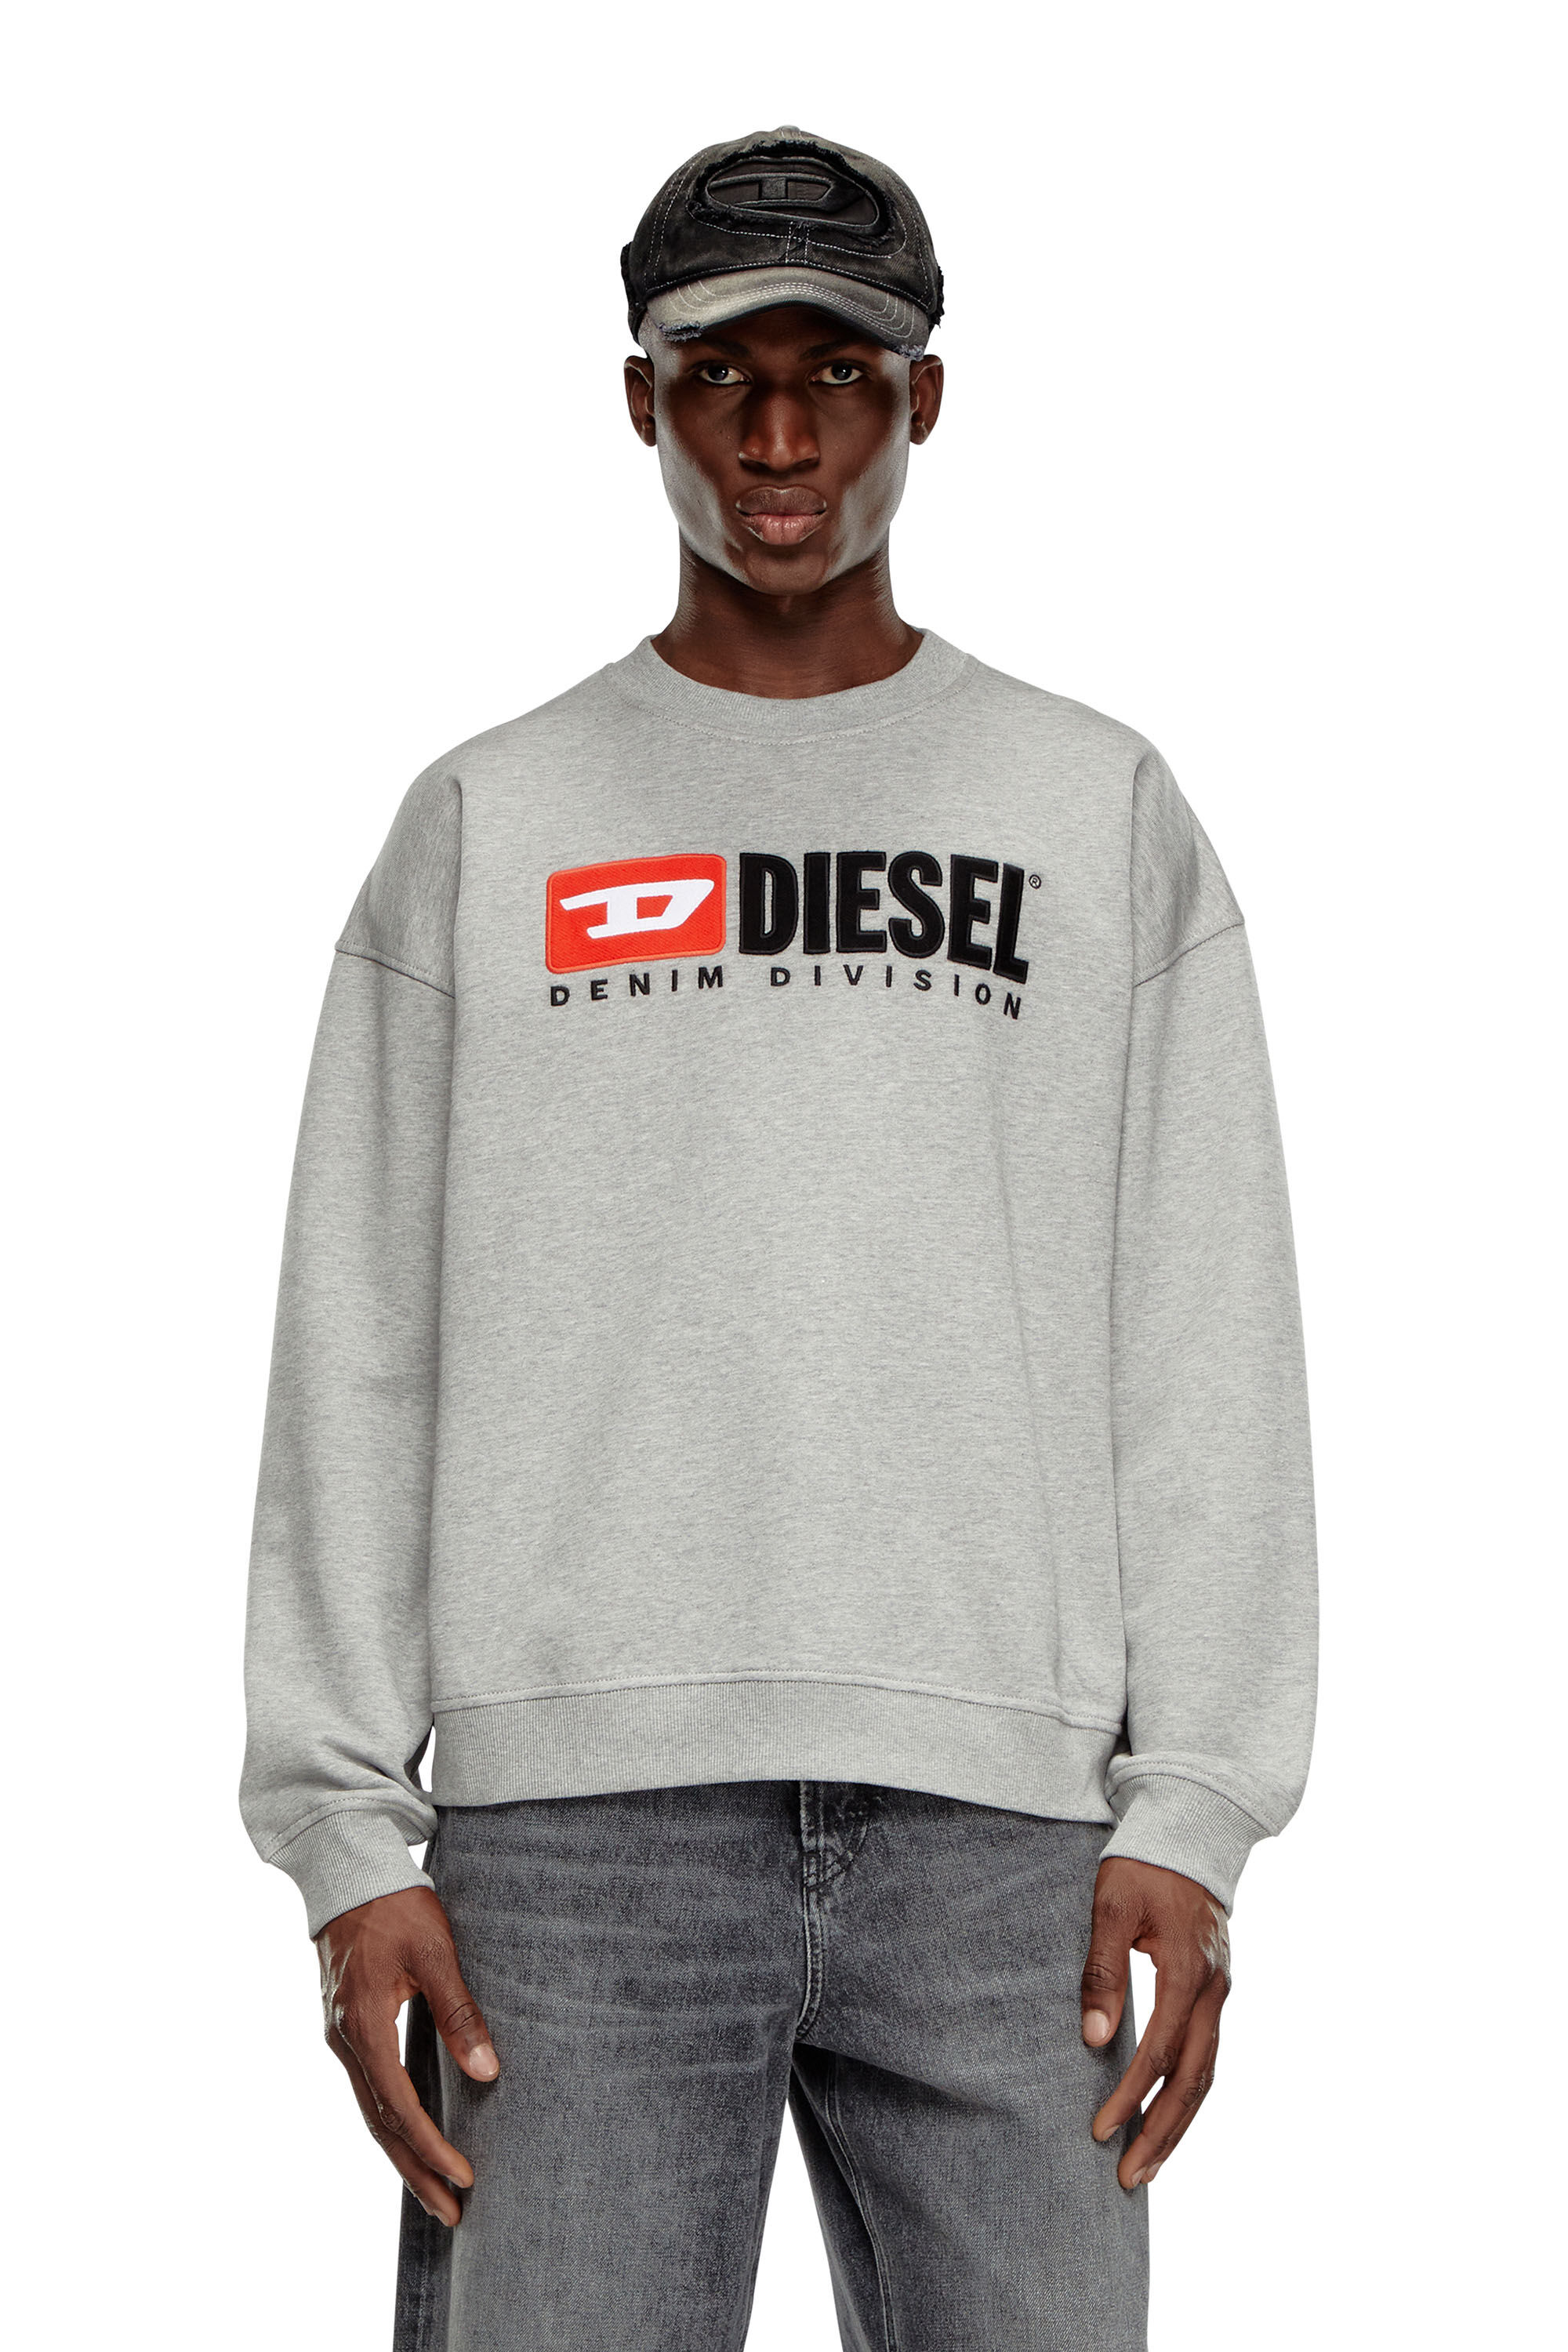 Diesel - S-BOXT-DIV, Herren Sweatshirt mit Denim Division-Logo in Grau - Image 3